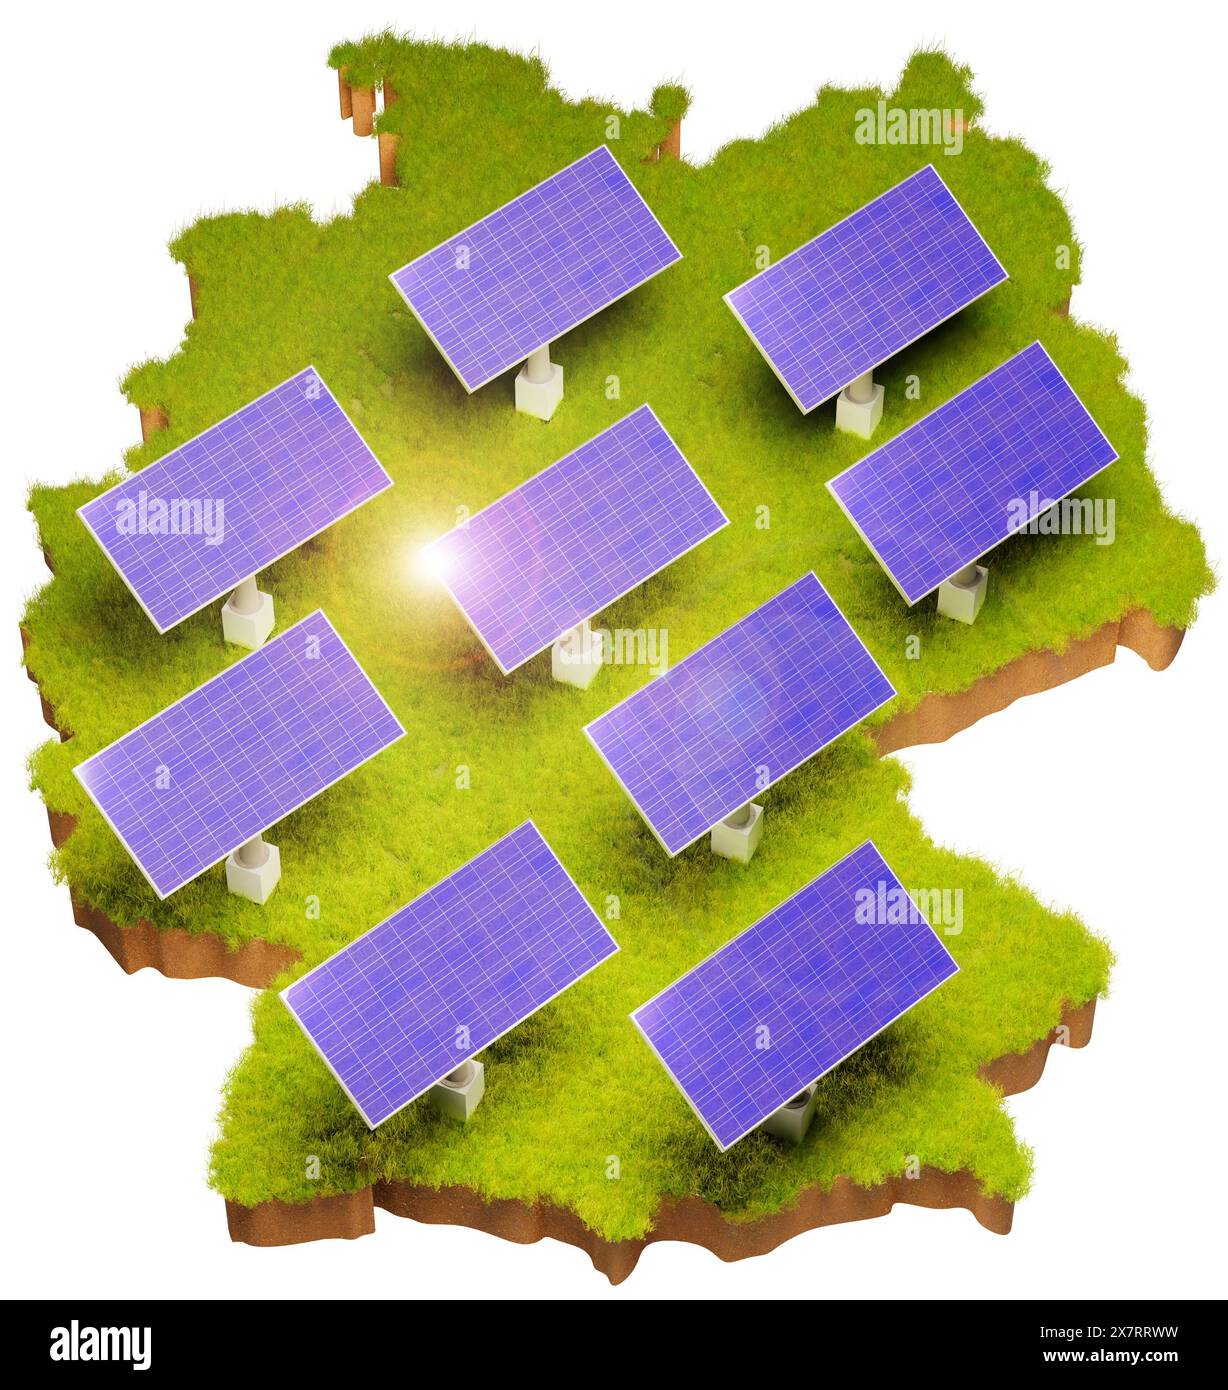 Energie renouvelable avec panneaux solaires en Allemagne concept. Zone d'herbe avec sol ci-dessous sous la forme de l'Allemagne avec des panneaux solaires ajoutés. Lumière parasite. Blanc BA Banque D'Images